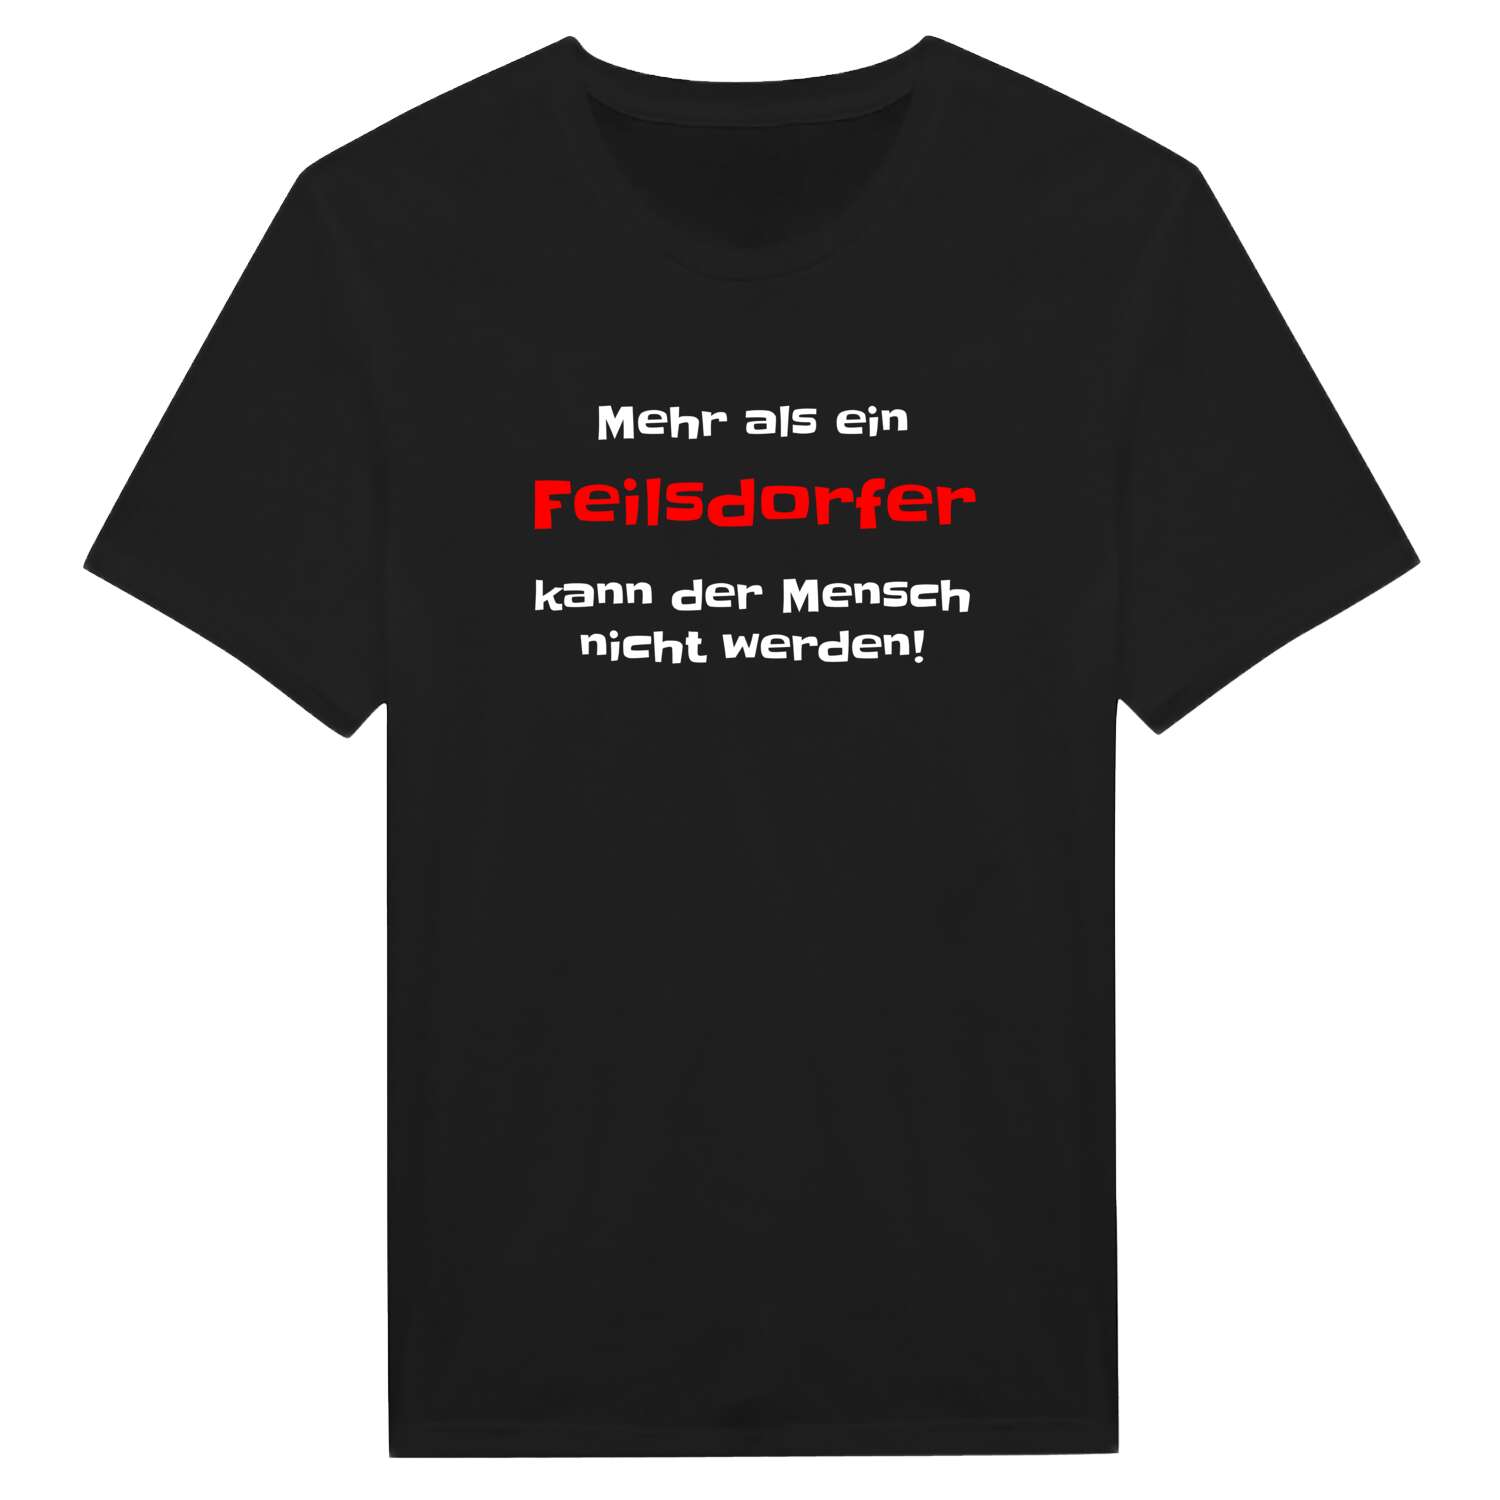 Feilsdorf T-Shirt »Mehr als ein«